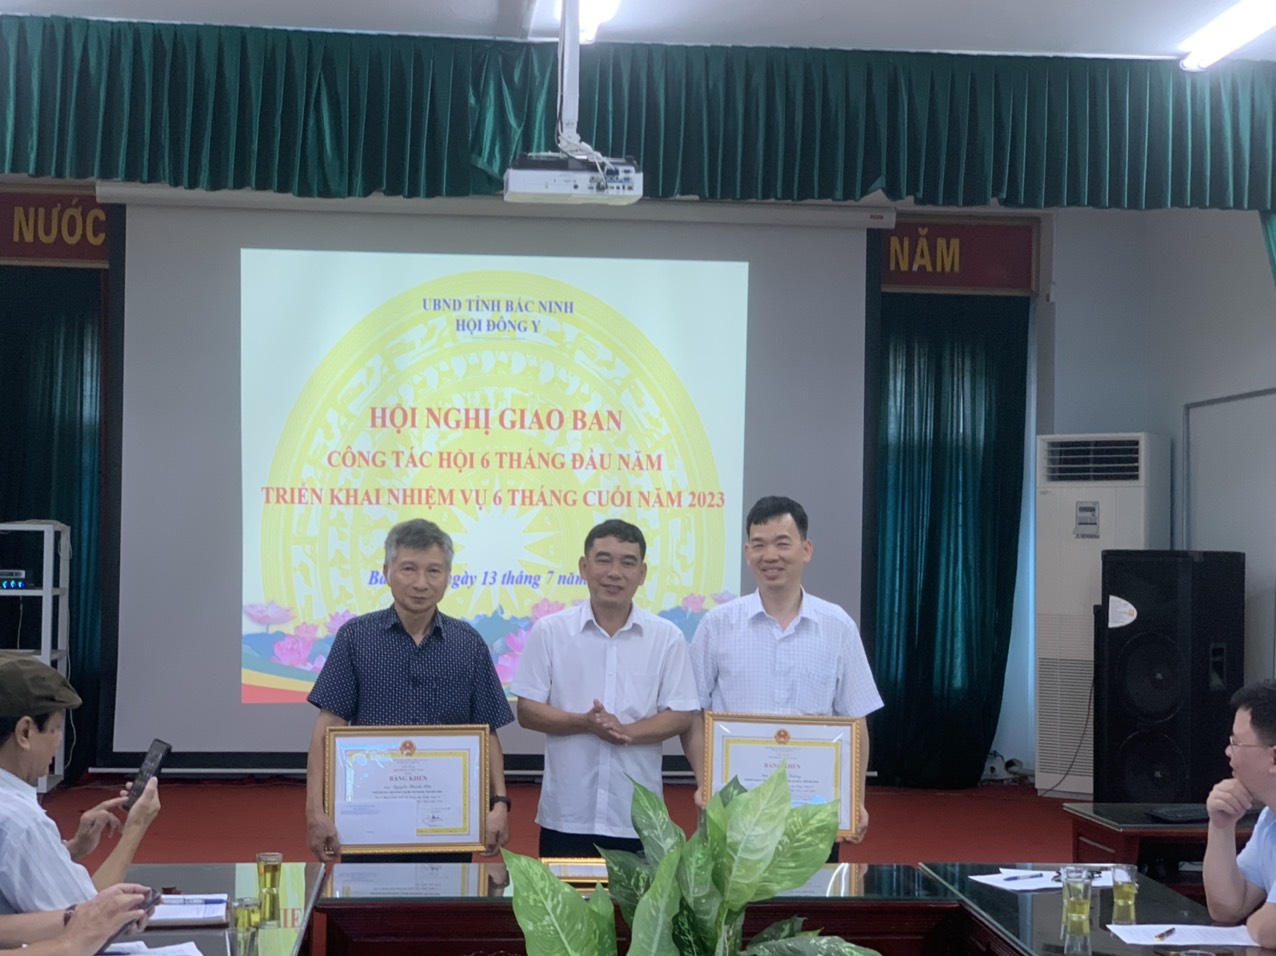 Hội Đông y tỉnh Bắc Ninh tổ chức giao ban 6 tháng đầu năm